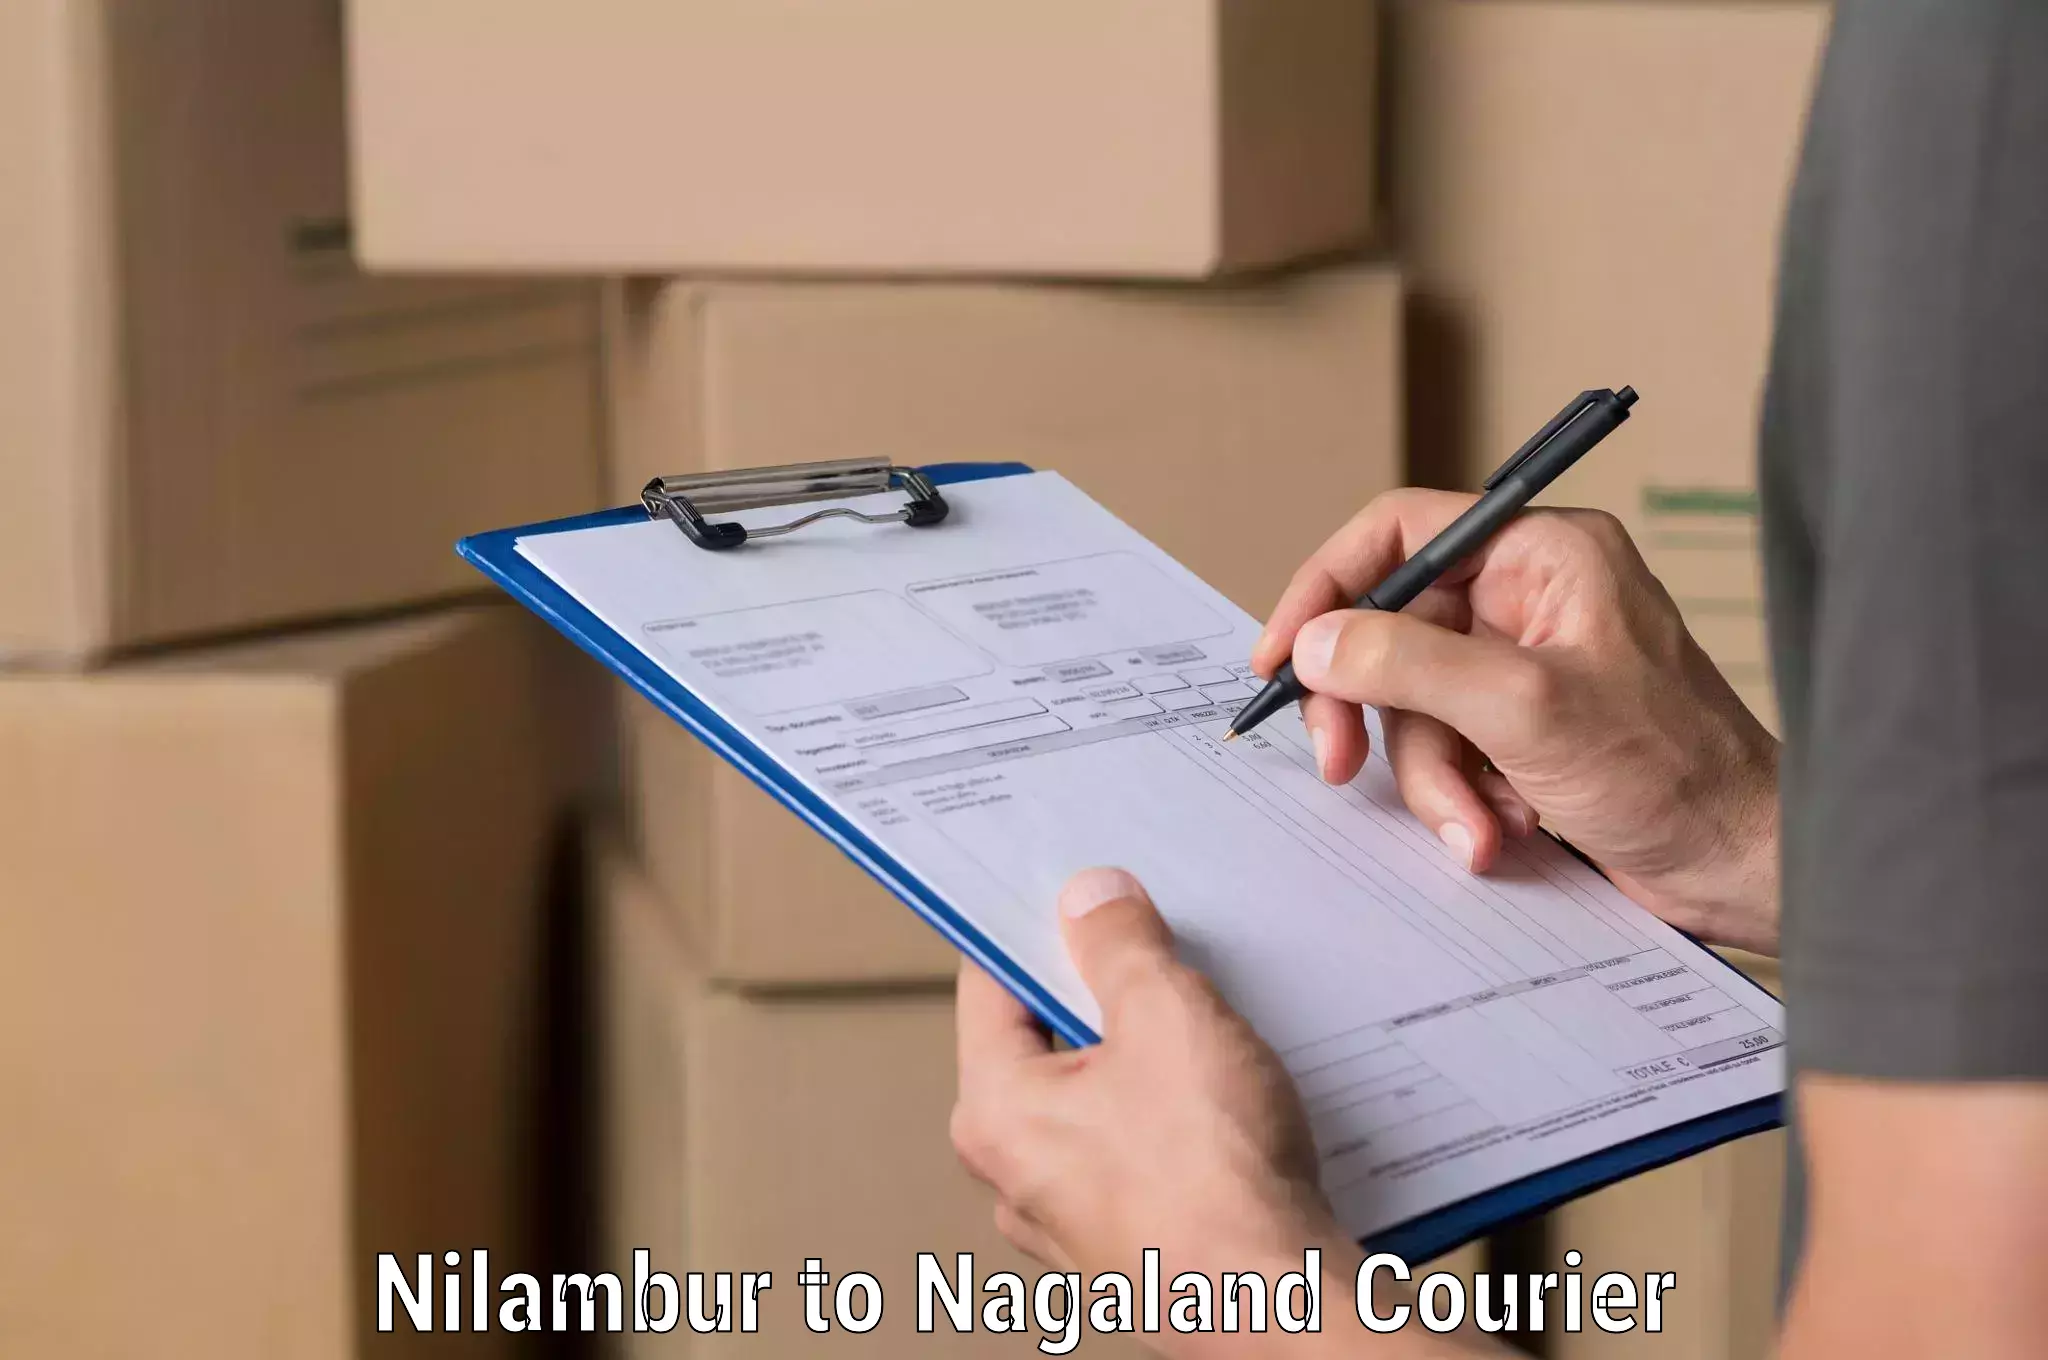 Courier service comparison Nilambur to Nagaland